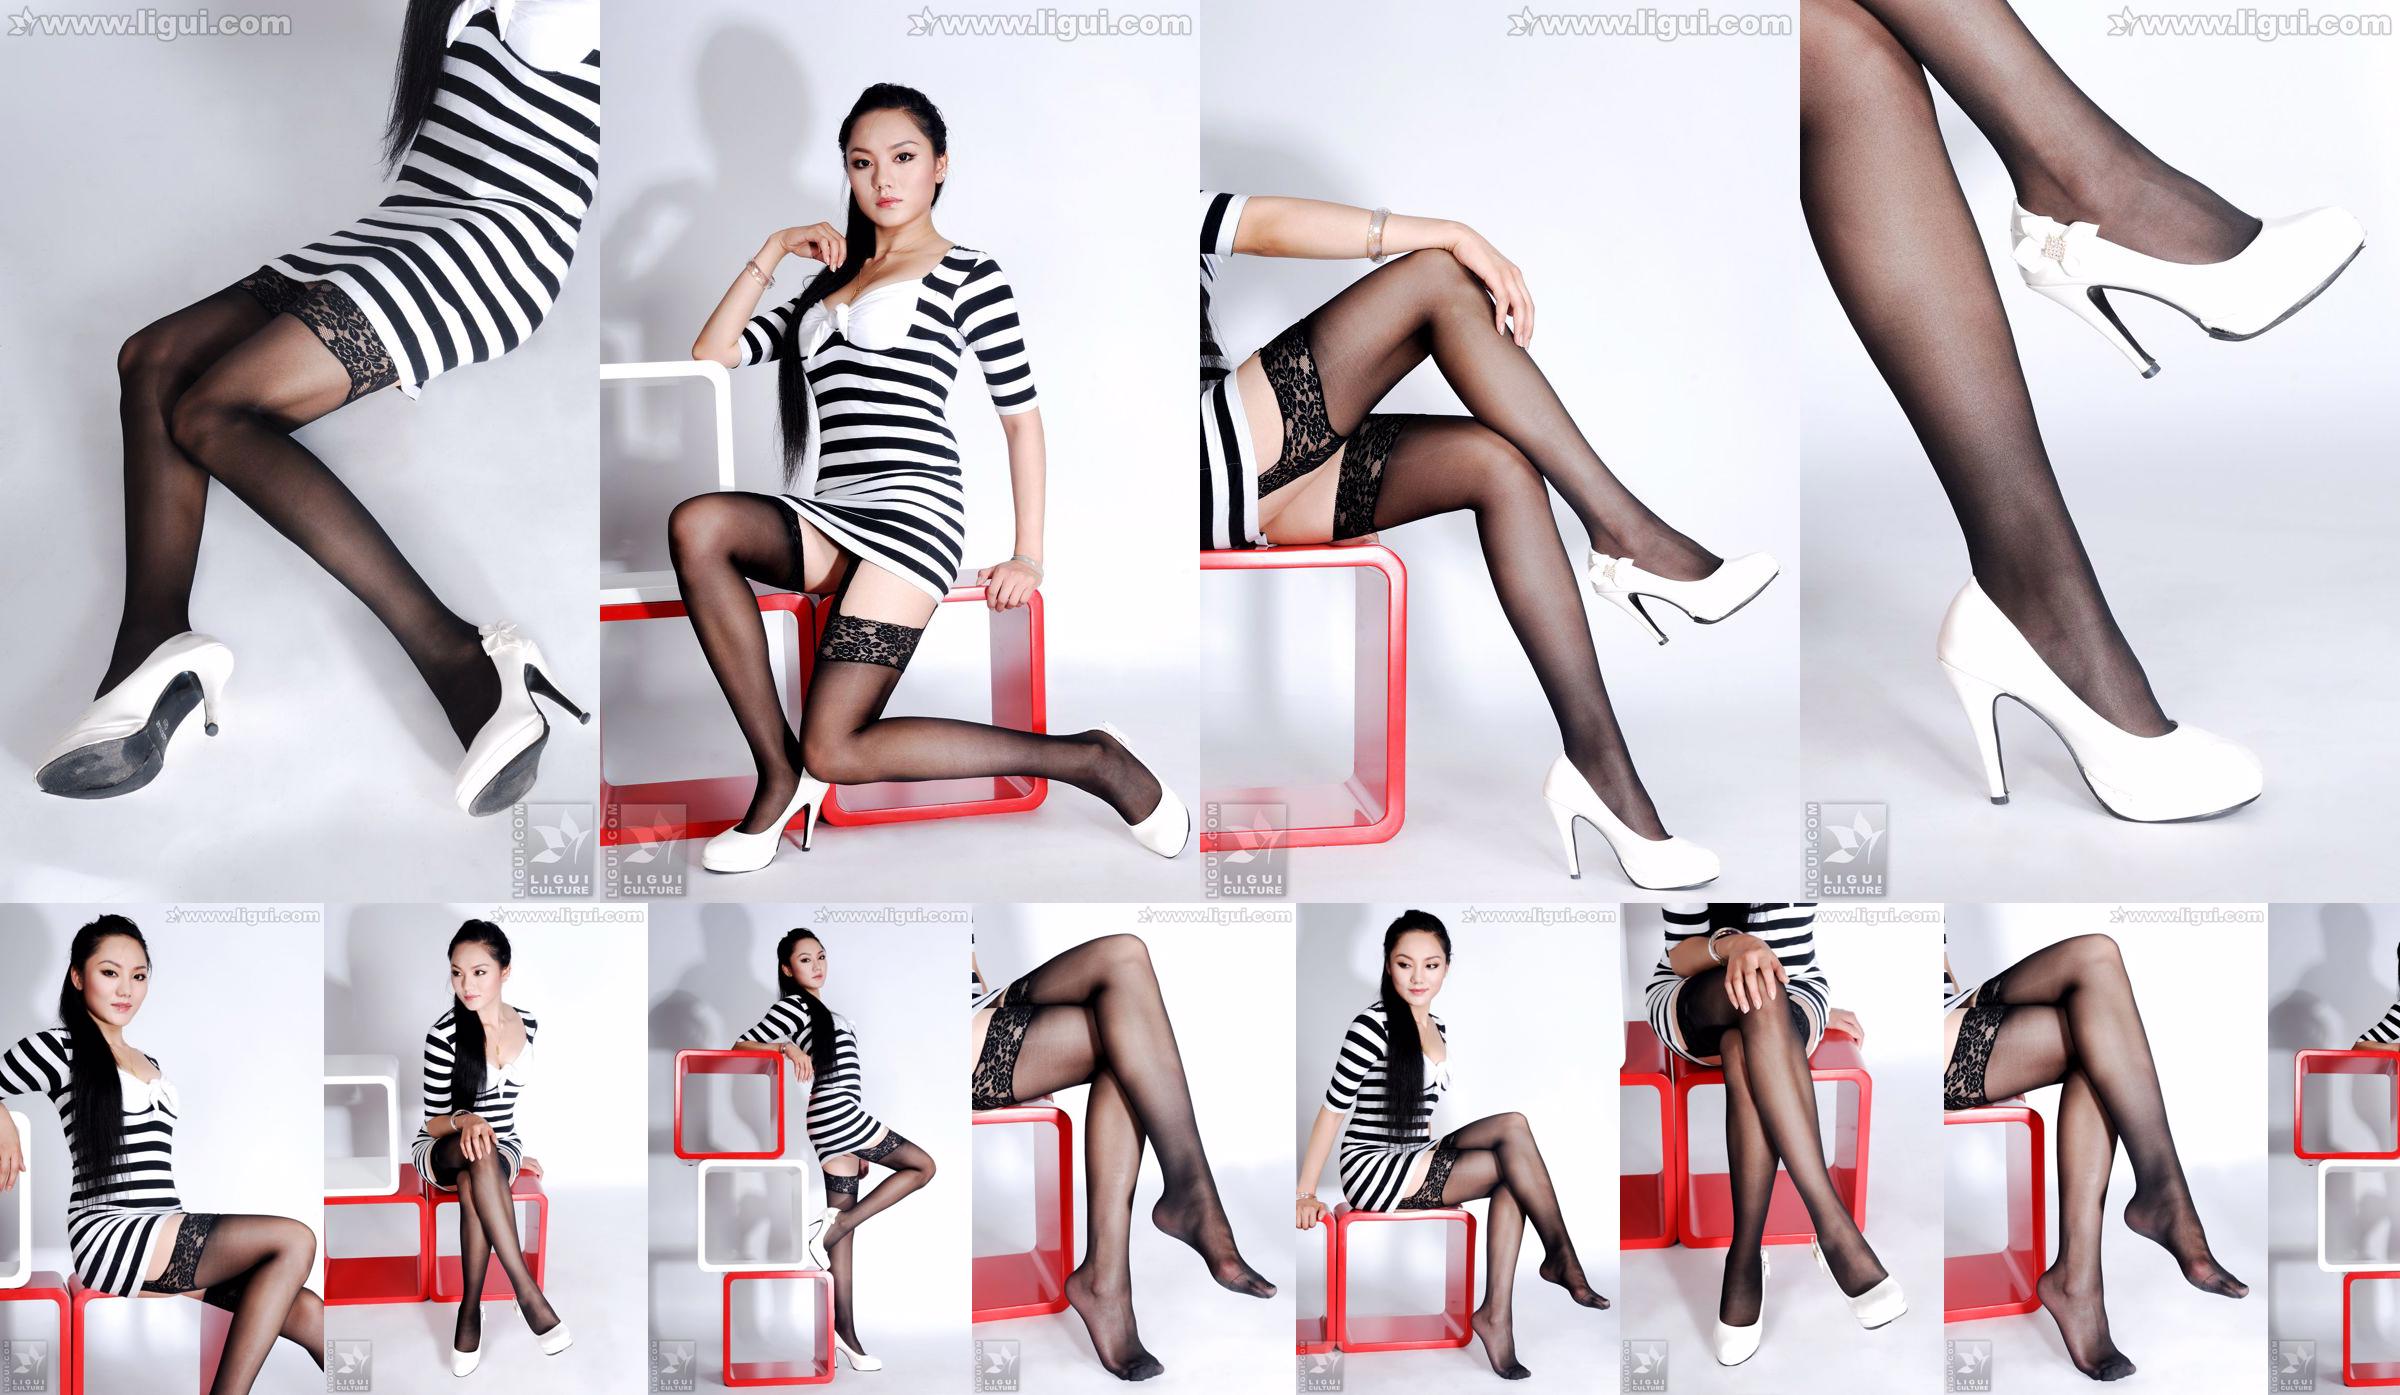 นางแบบ Yang Zi "The Charm of Stockings in Simple Home Decoration" [丽柜 LiGui] รูปถ่ายขาสวยและเท้าหยก No.66e46a หน้า 1